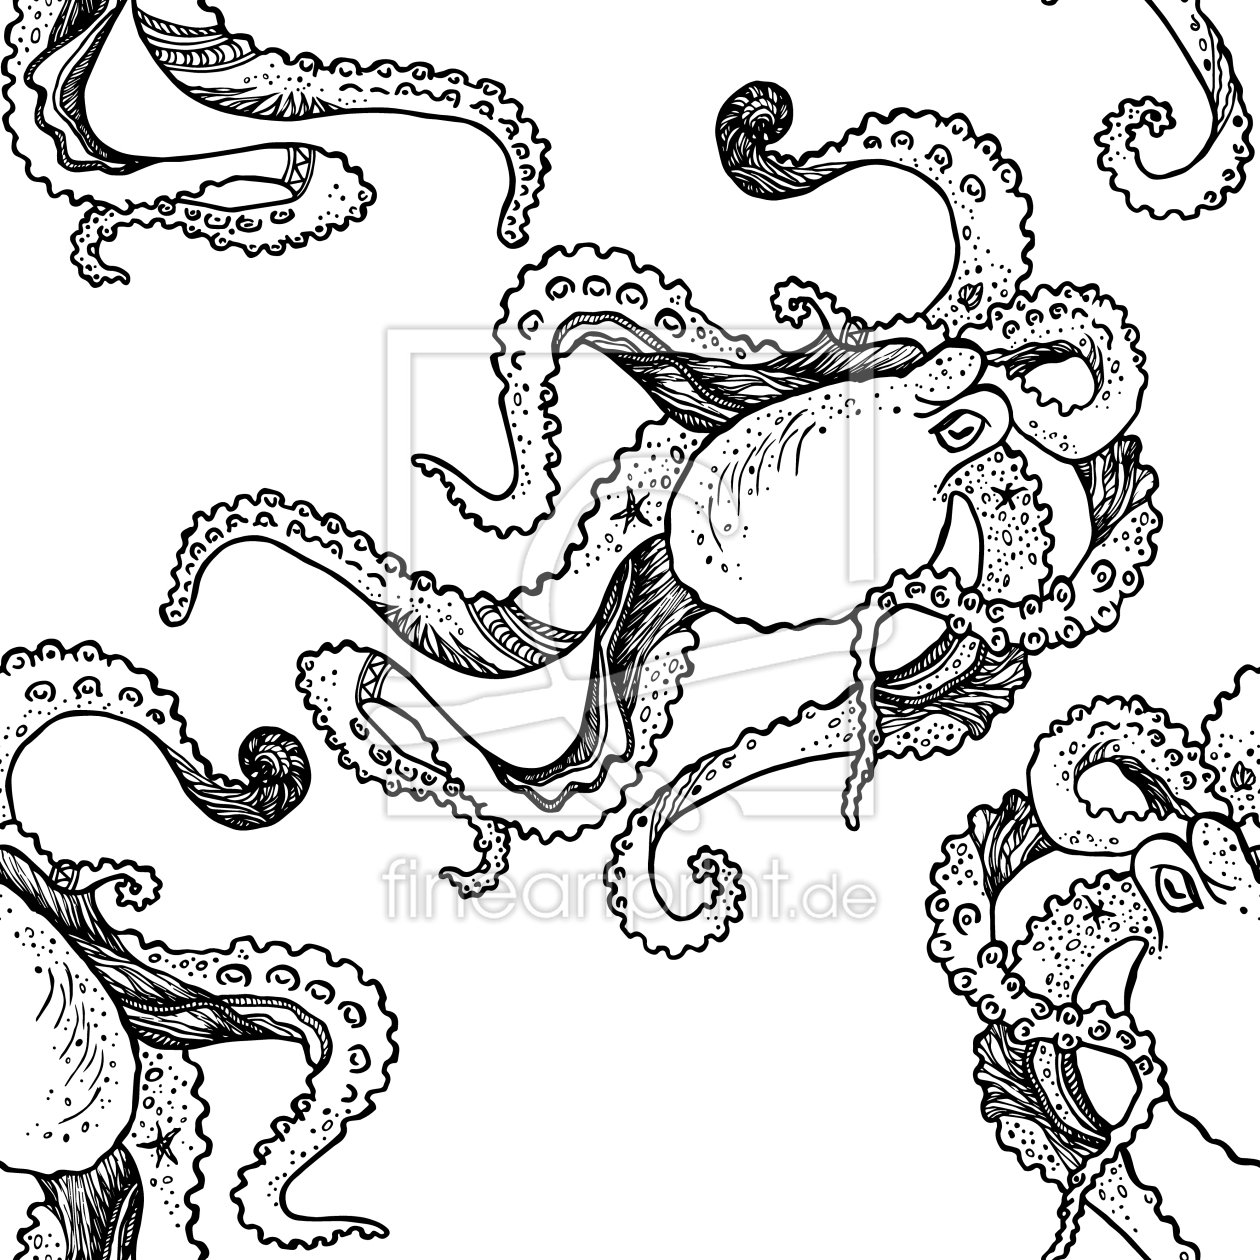 Bild-Nr.: 9015458 Faltiger Octopus erstellt von patterndesigns-com